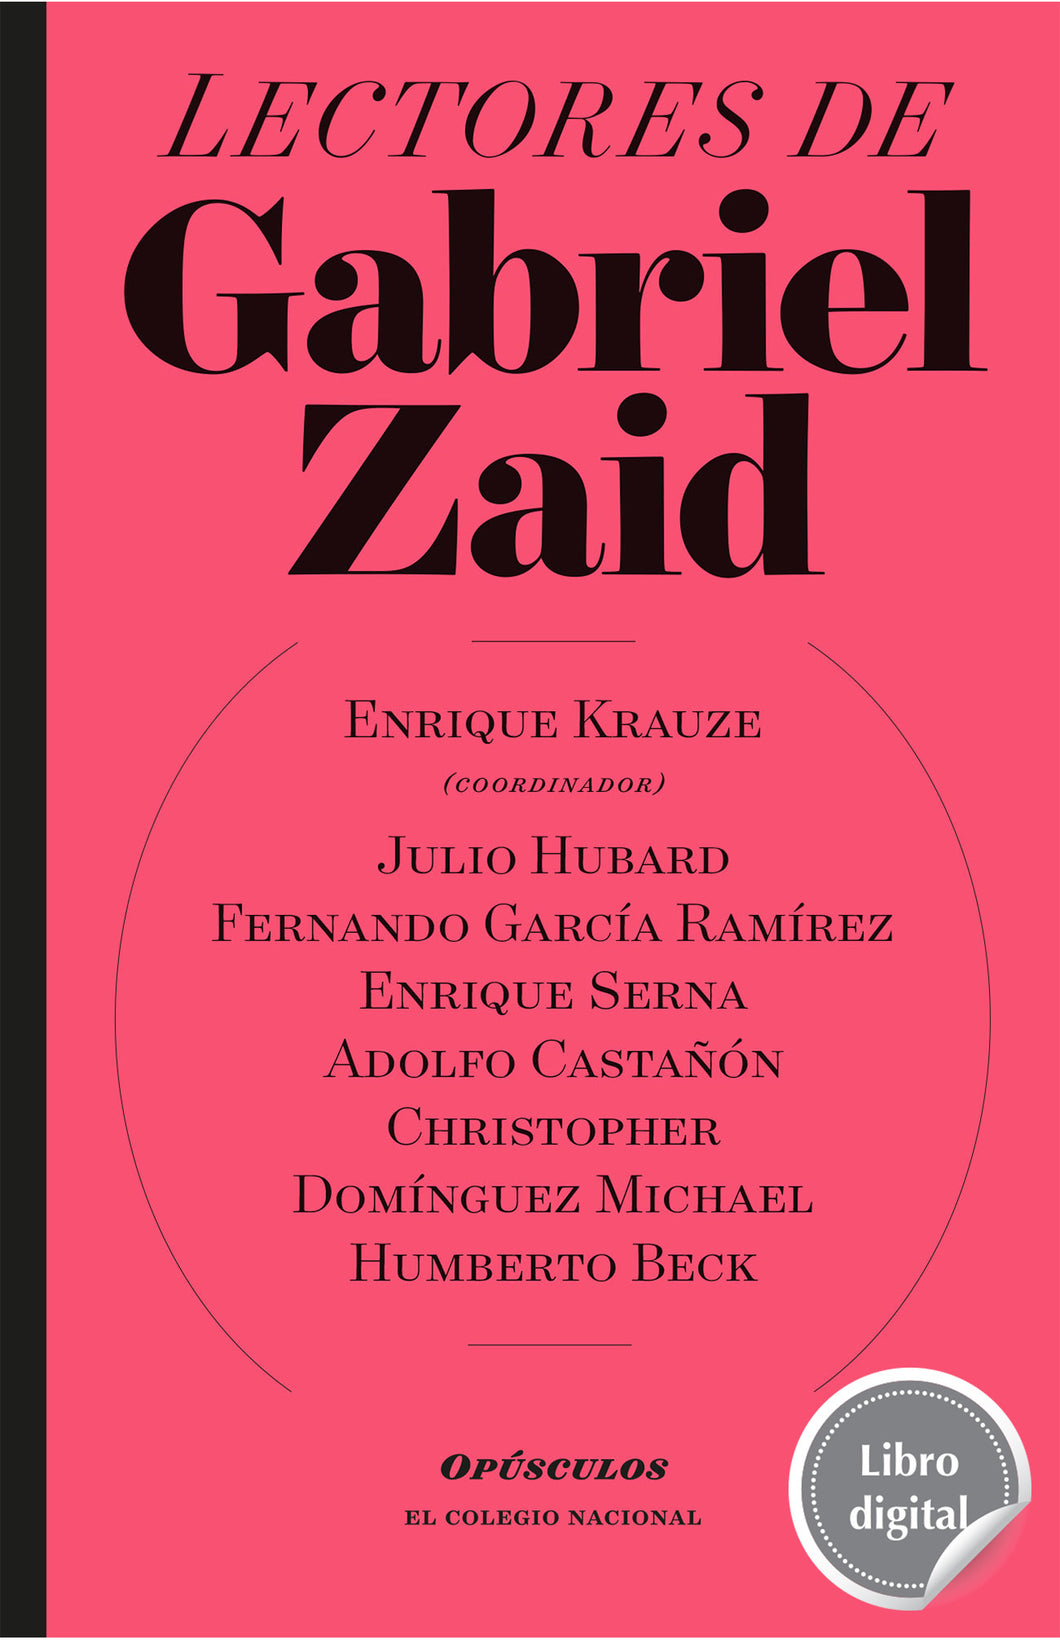 Lectores de Gabriel Zaid de Enrique Krauze, libro digital de El Colegio Nacional, Libros Colnal